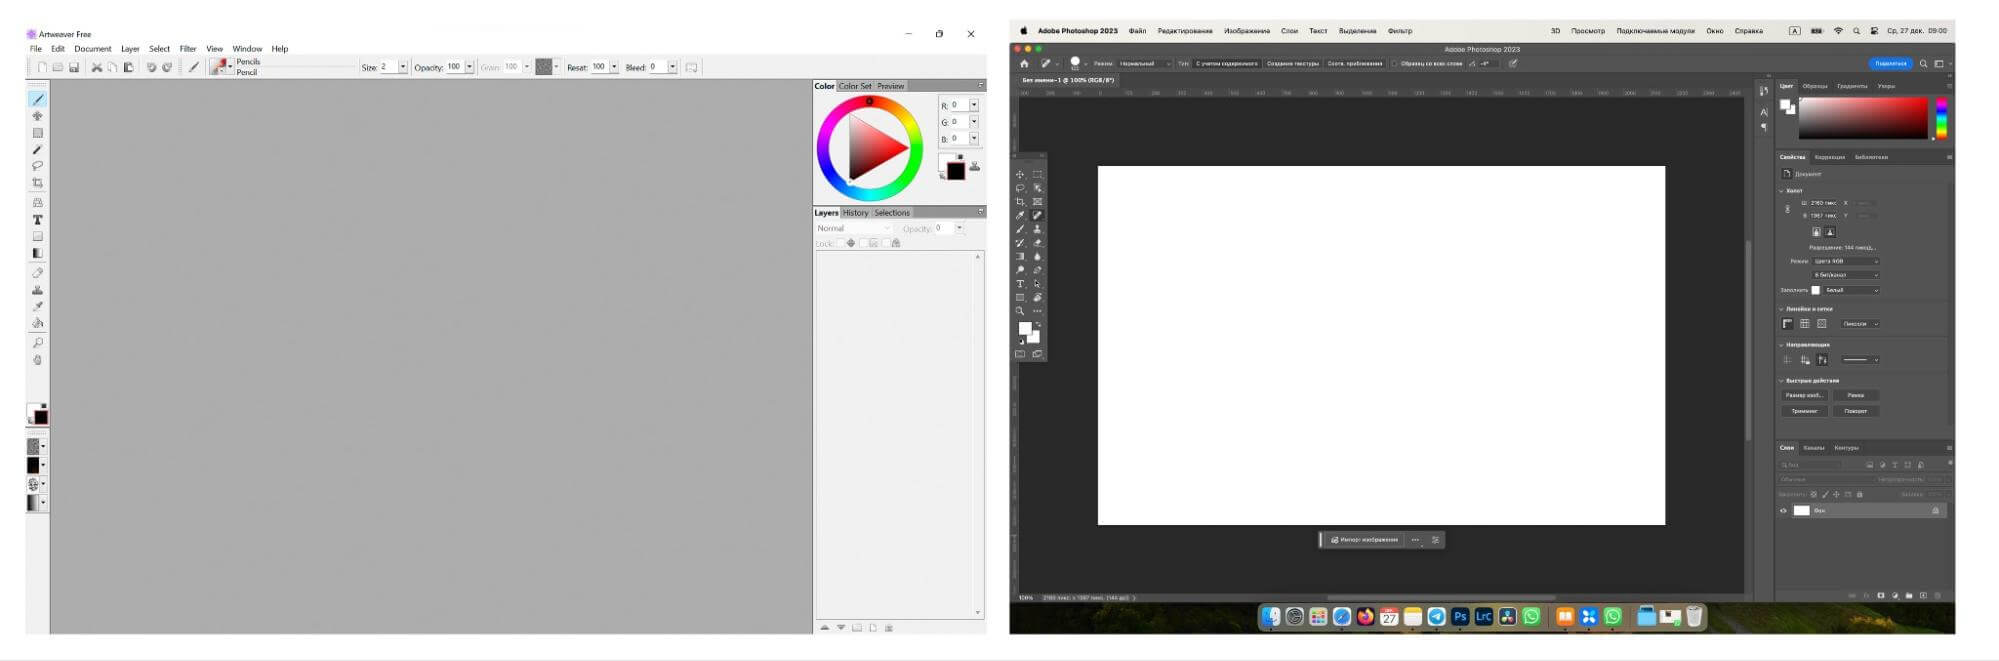 Интерфейсы Artweaver и Adobe Photoshop.